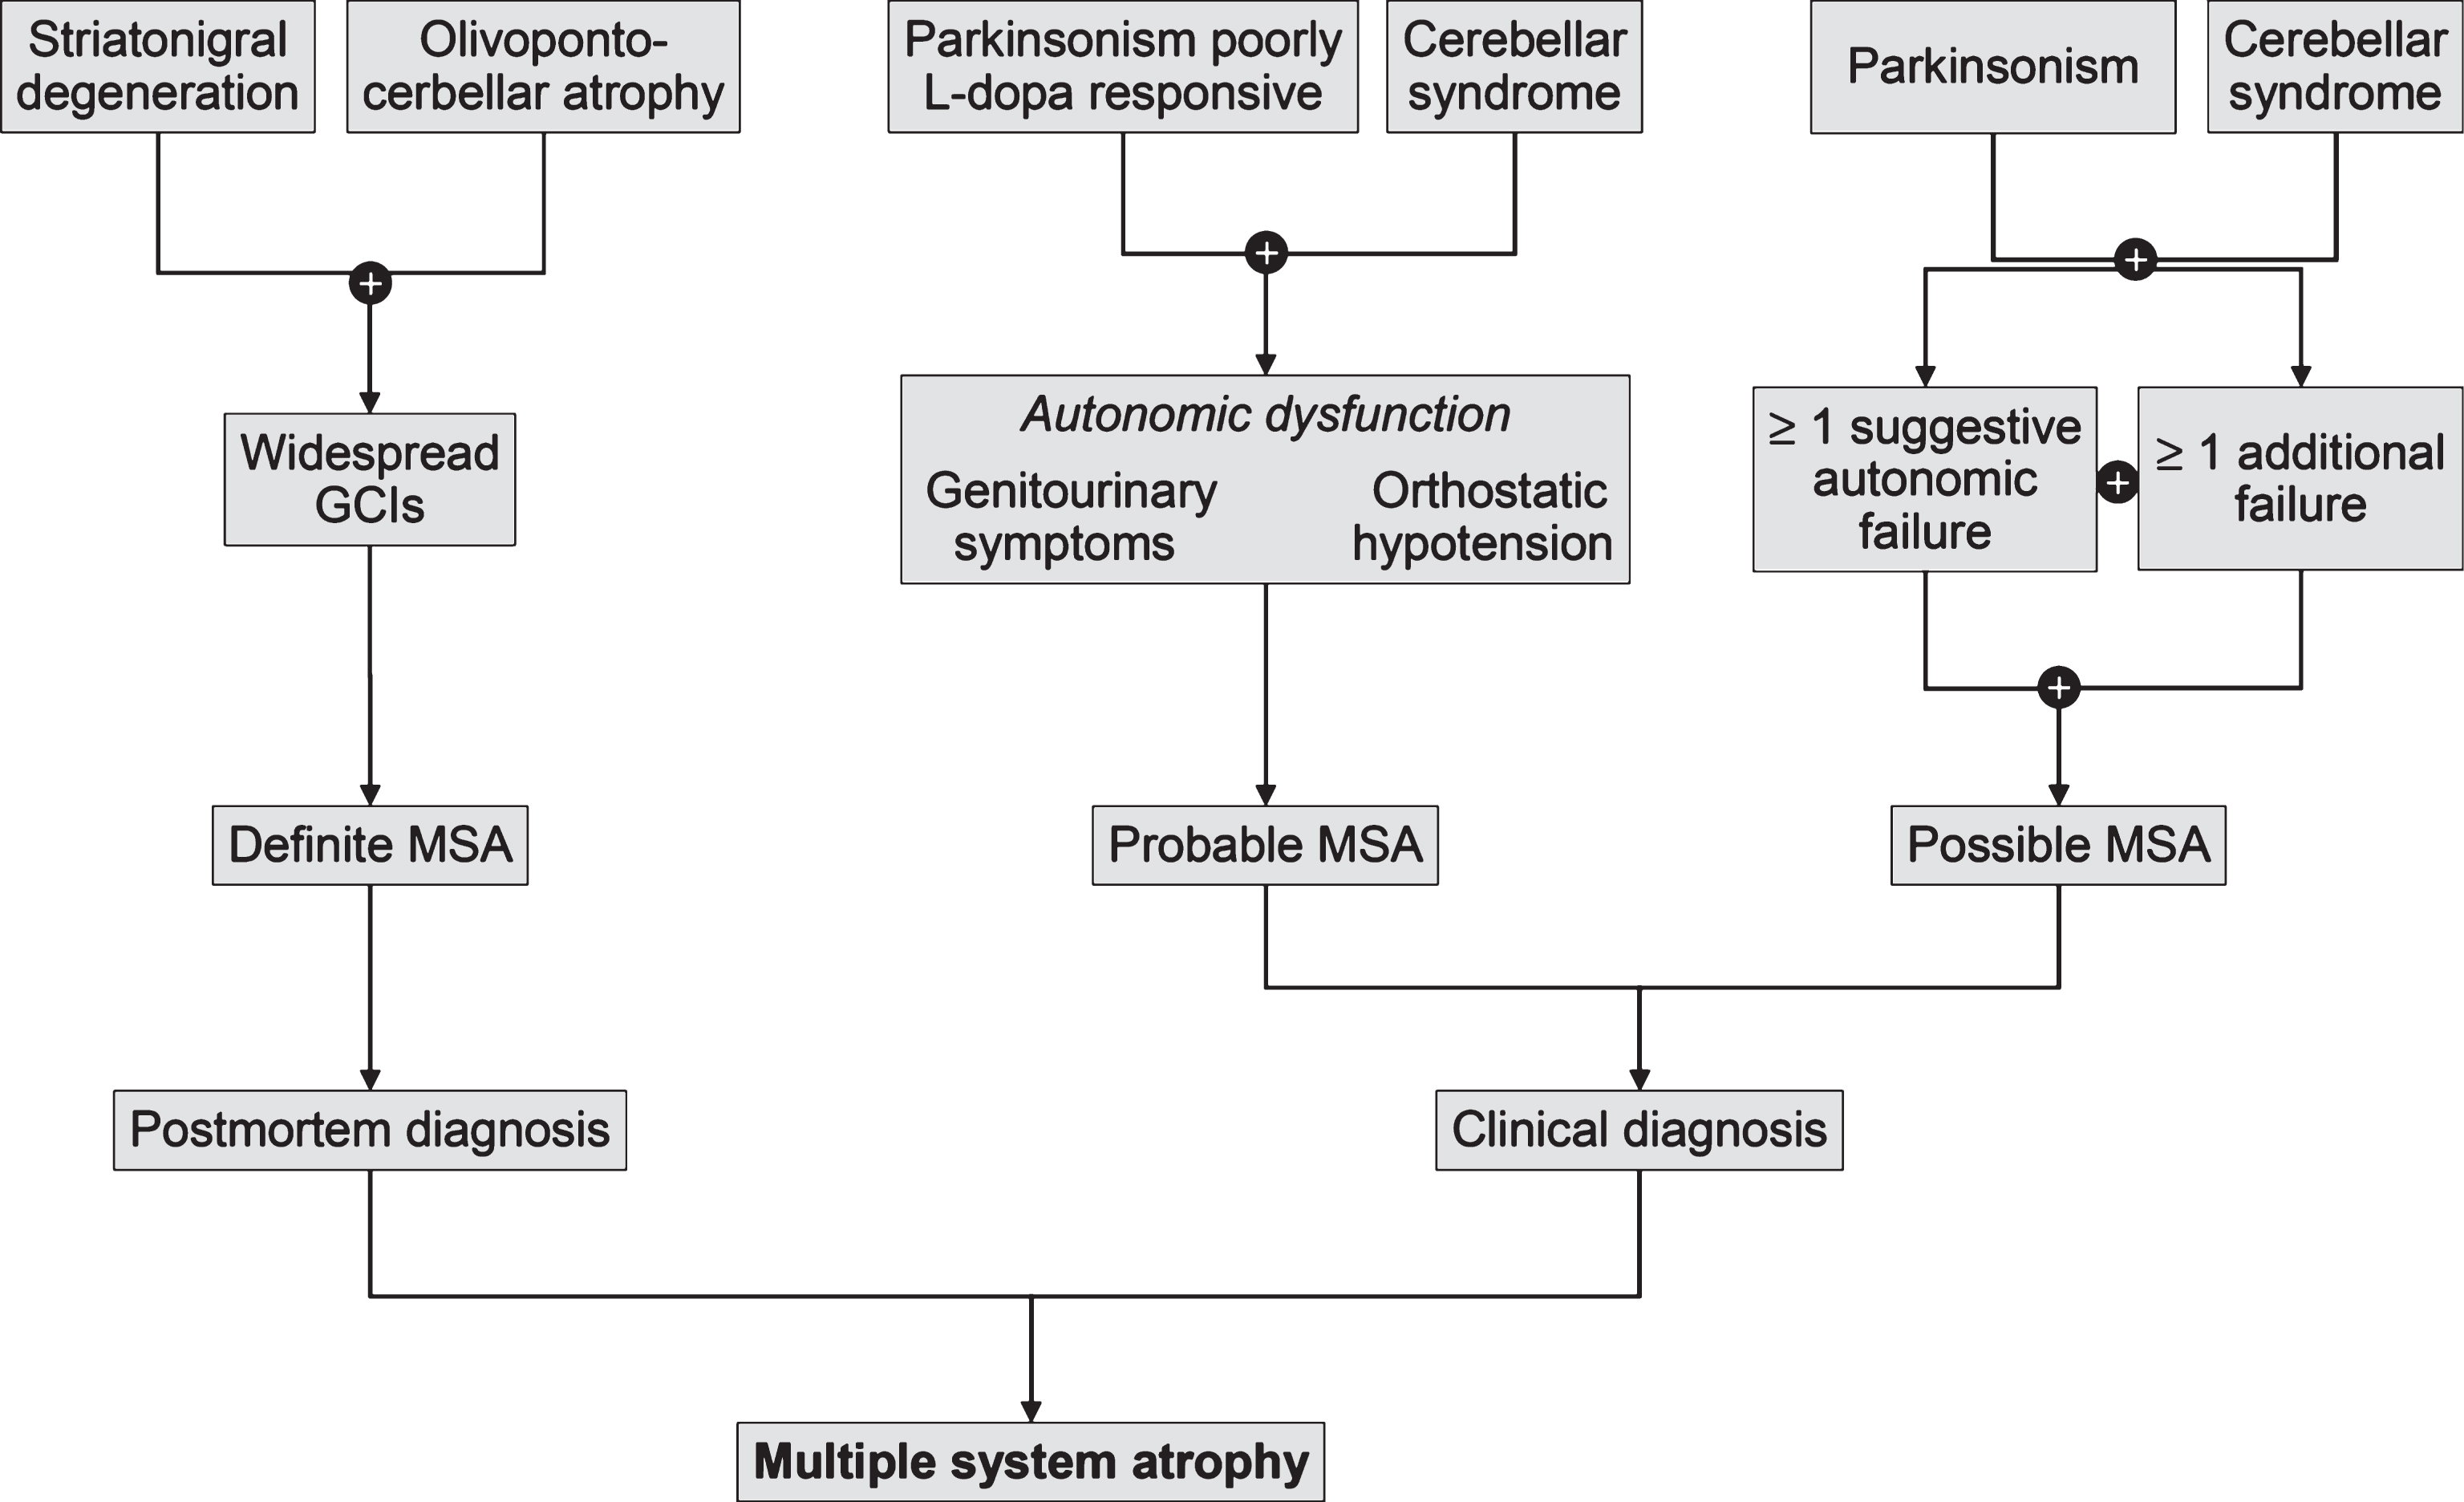 Diagnostic scheme for MSA according to the current consensus diagnostic criteria.